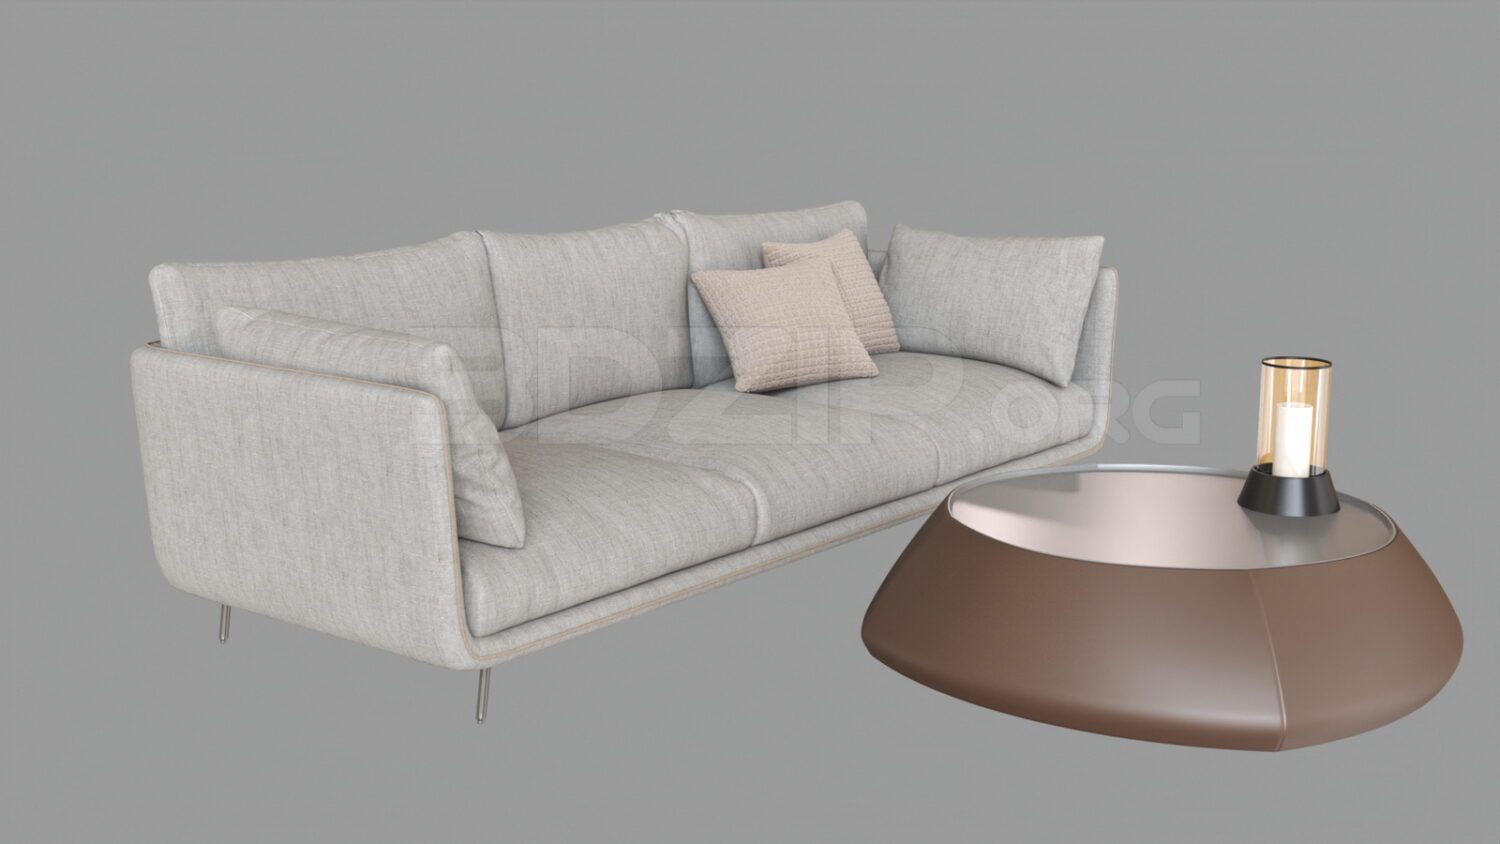 4322. Free 3D Sofa Model Download